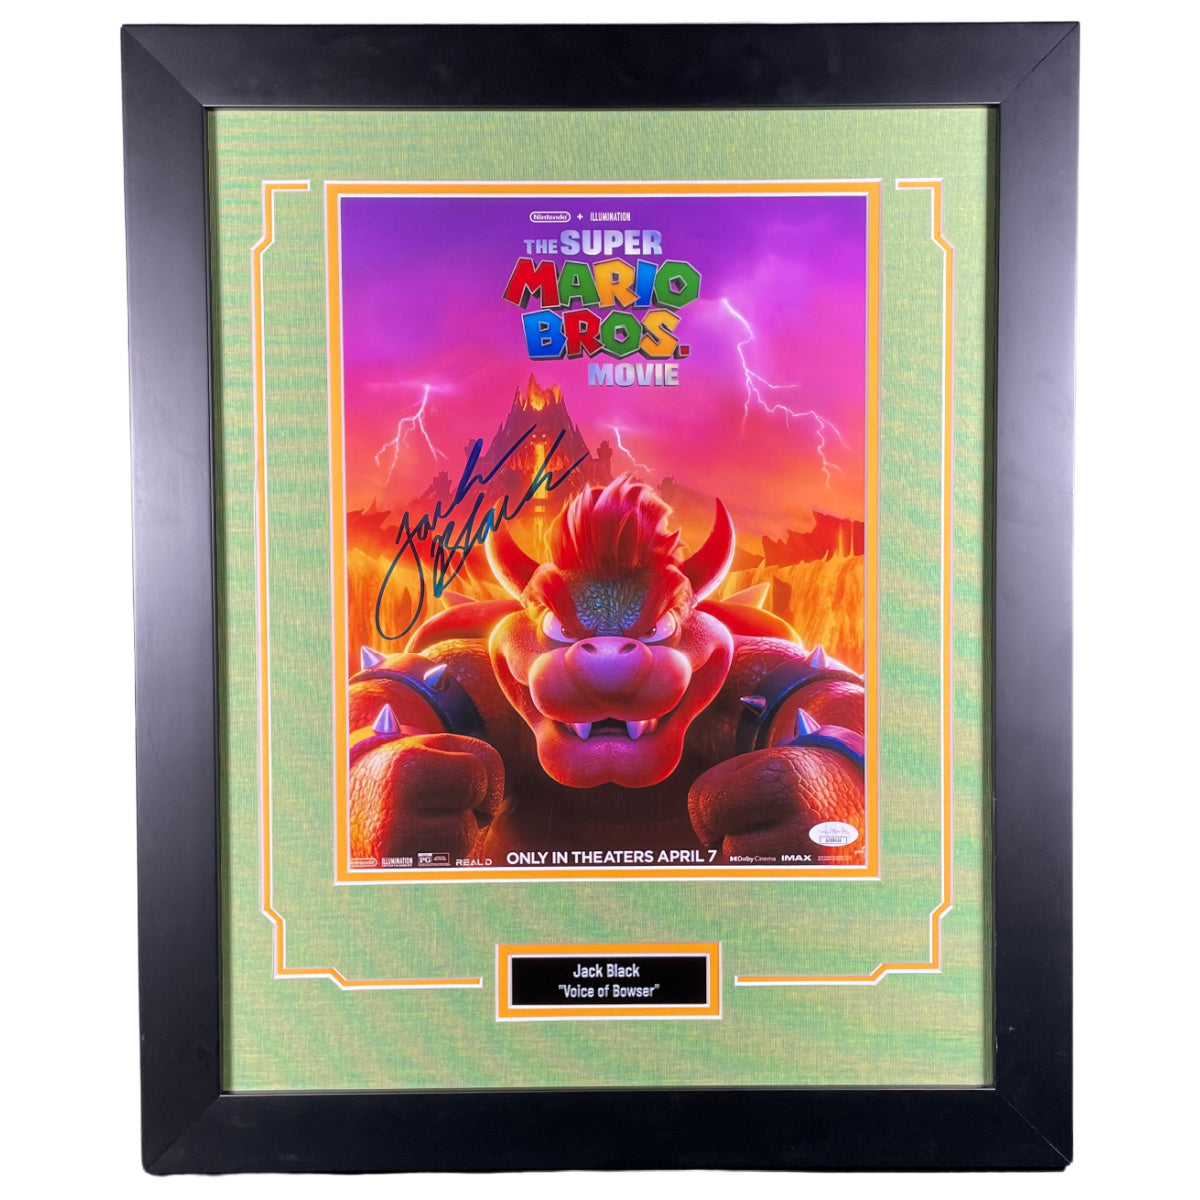 Jack Black Signed 11x14 Framed Photo Super Mario Bros. Bowser Autographed JSA COA